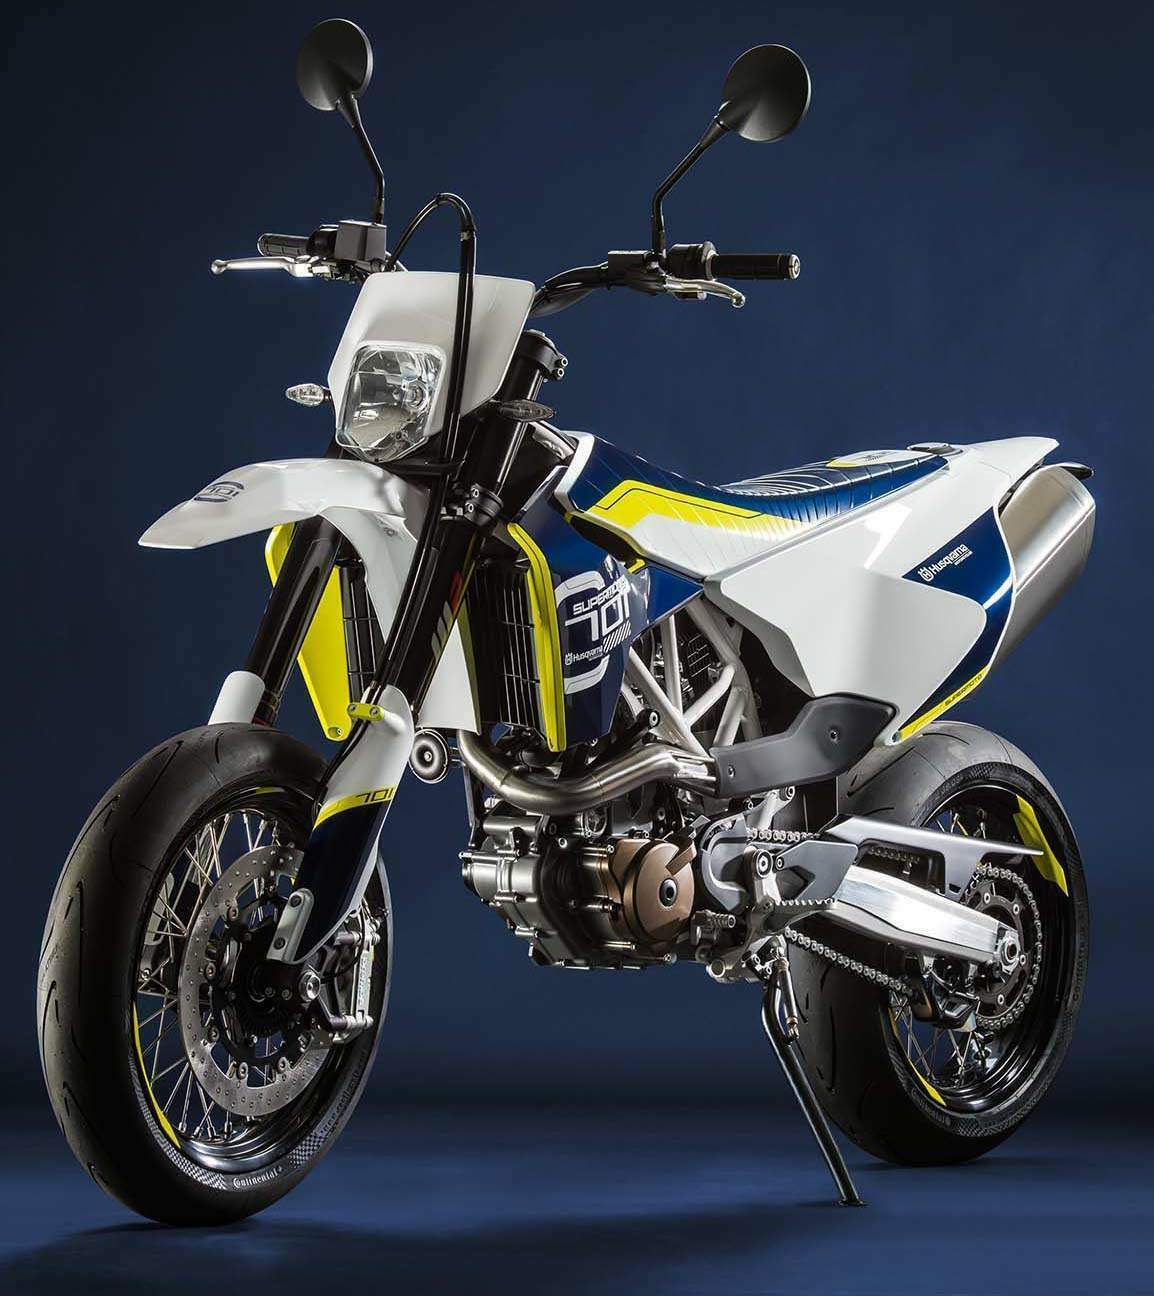 Системы безопасности и управляемости мотоцикла Husqvarna SM 701 Supermoto 2015